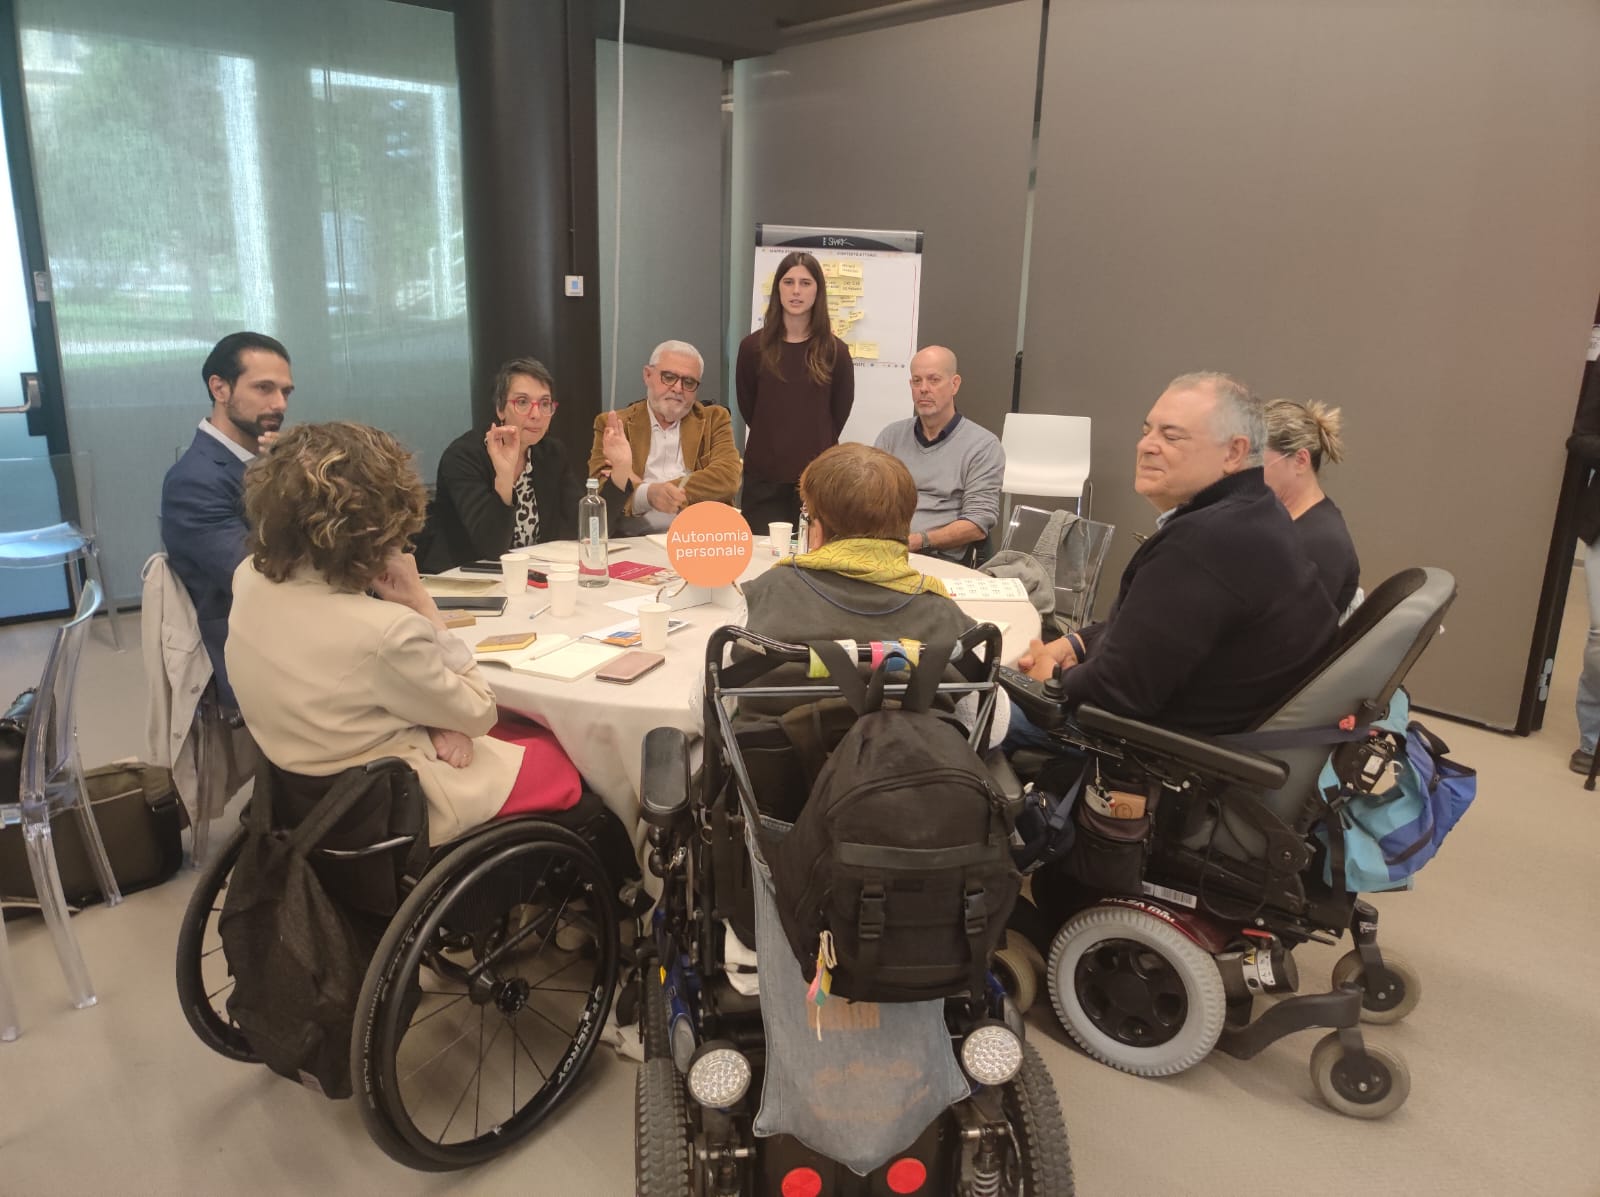 Giornata dell’accessibilità, persone con disabilità e esperti a confronto sulle strategie